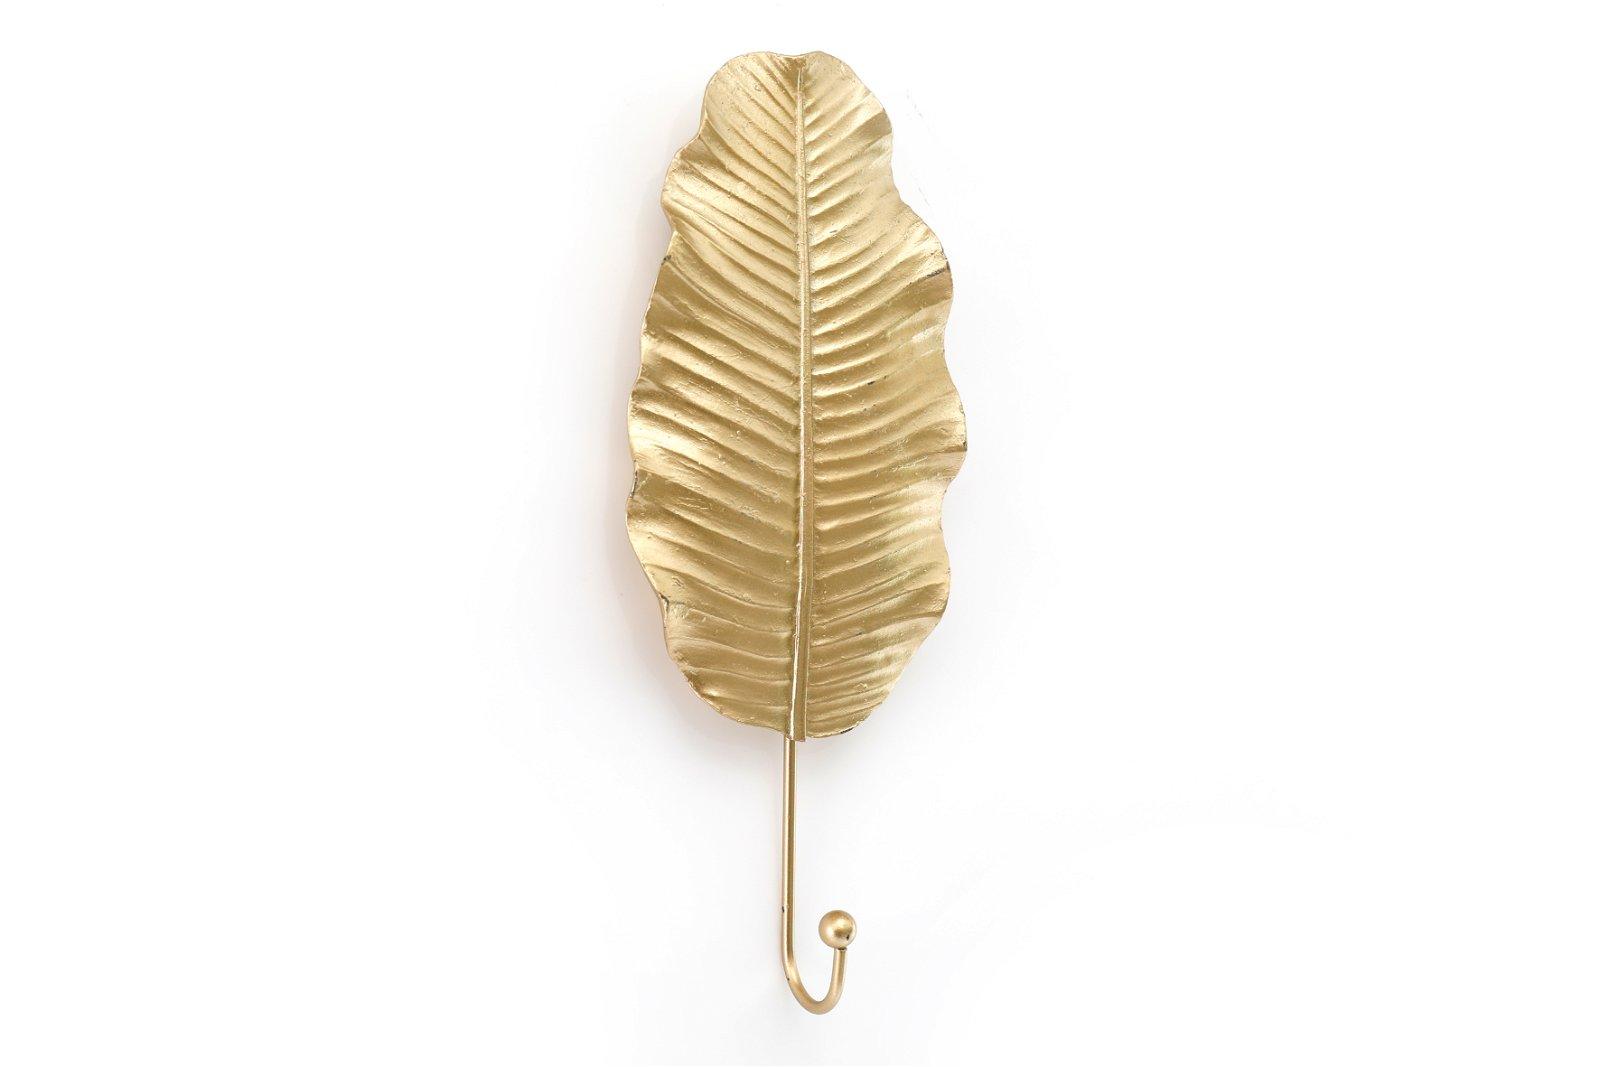 https://www.kneepillow.co.uk/cdn/shop/products/gold-leaf-wall-hook-27cm-coat-hooks-4.jpg?v=1680133236&width=1946